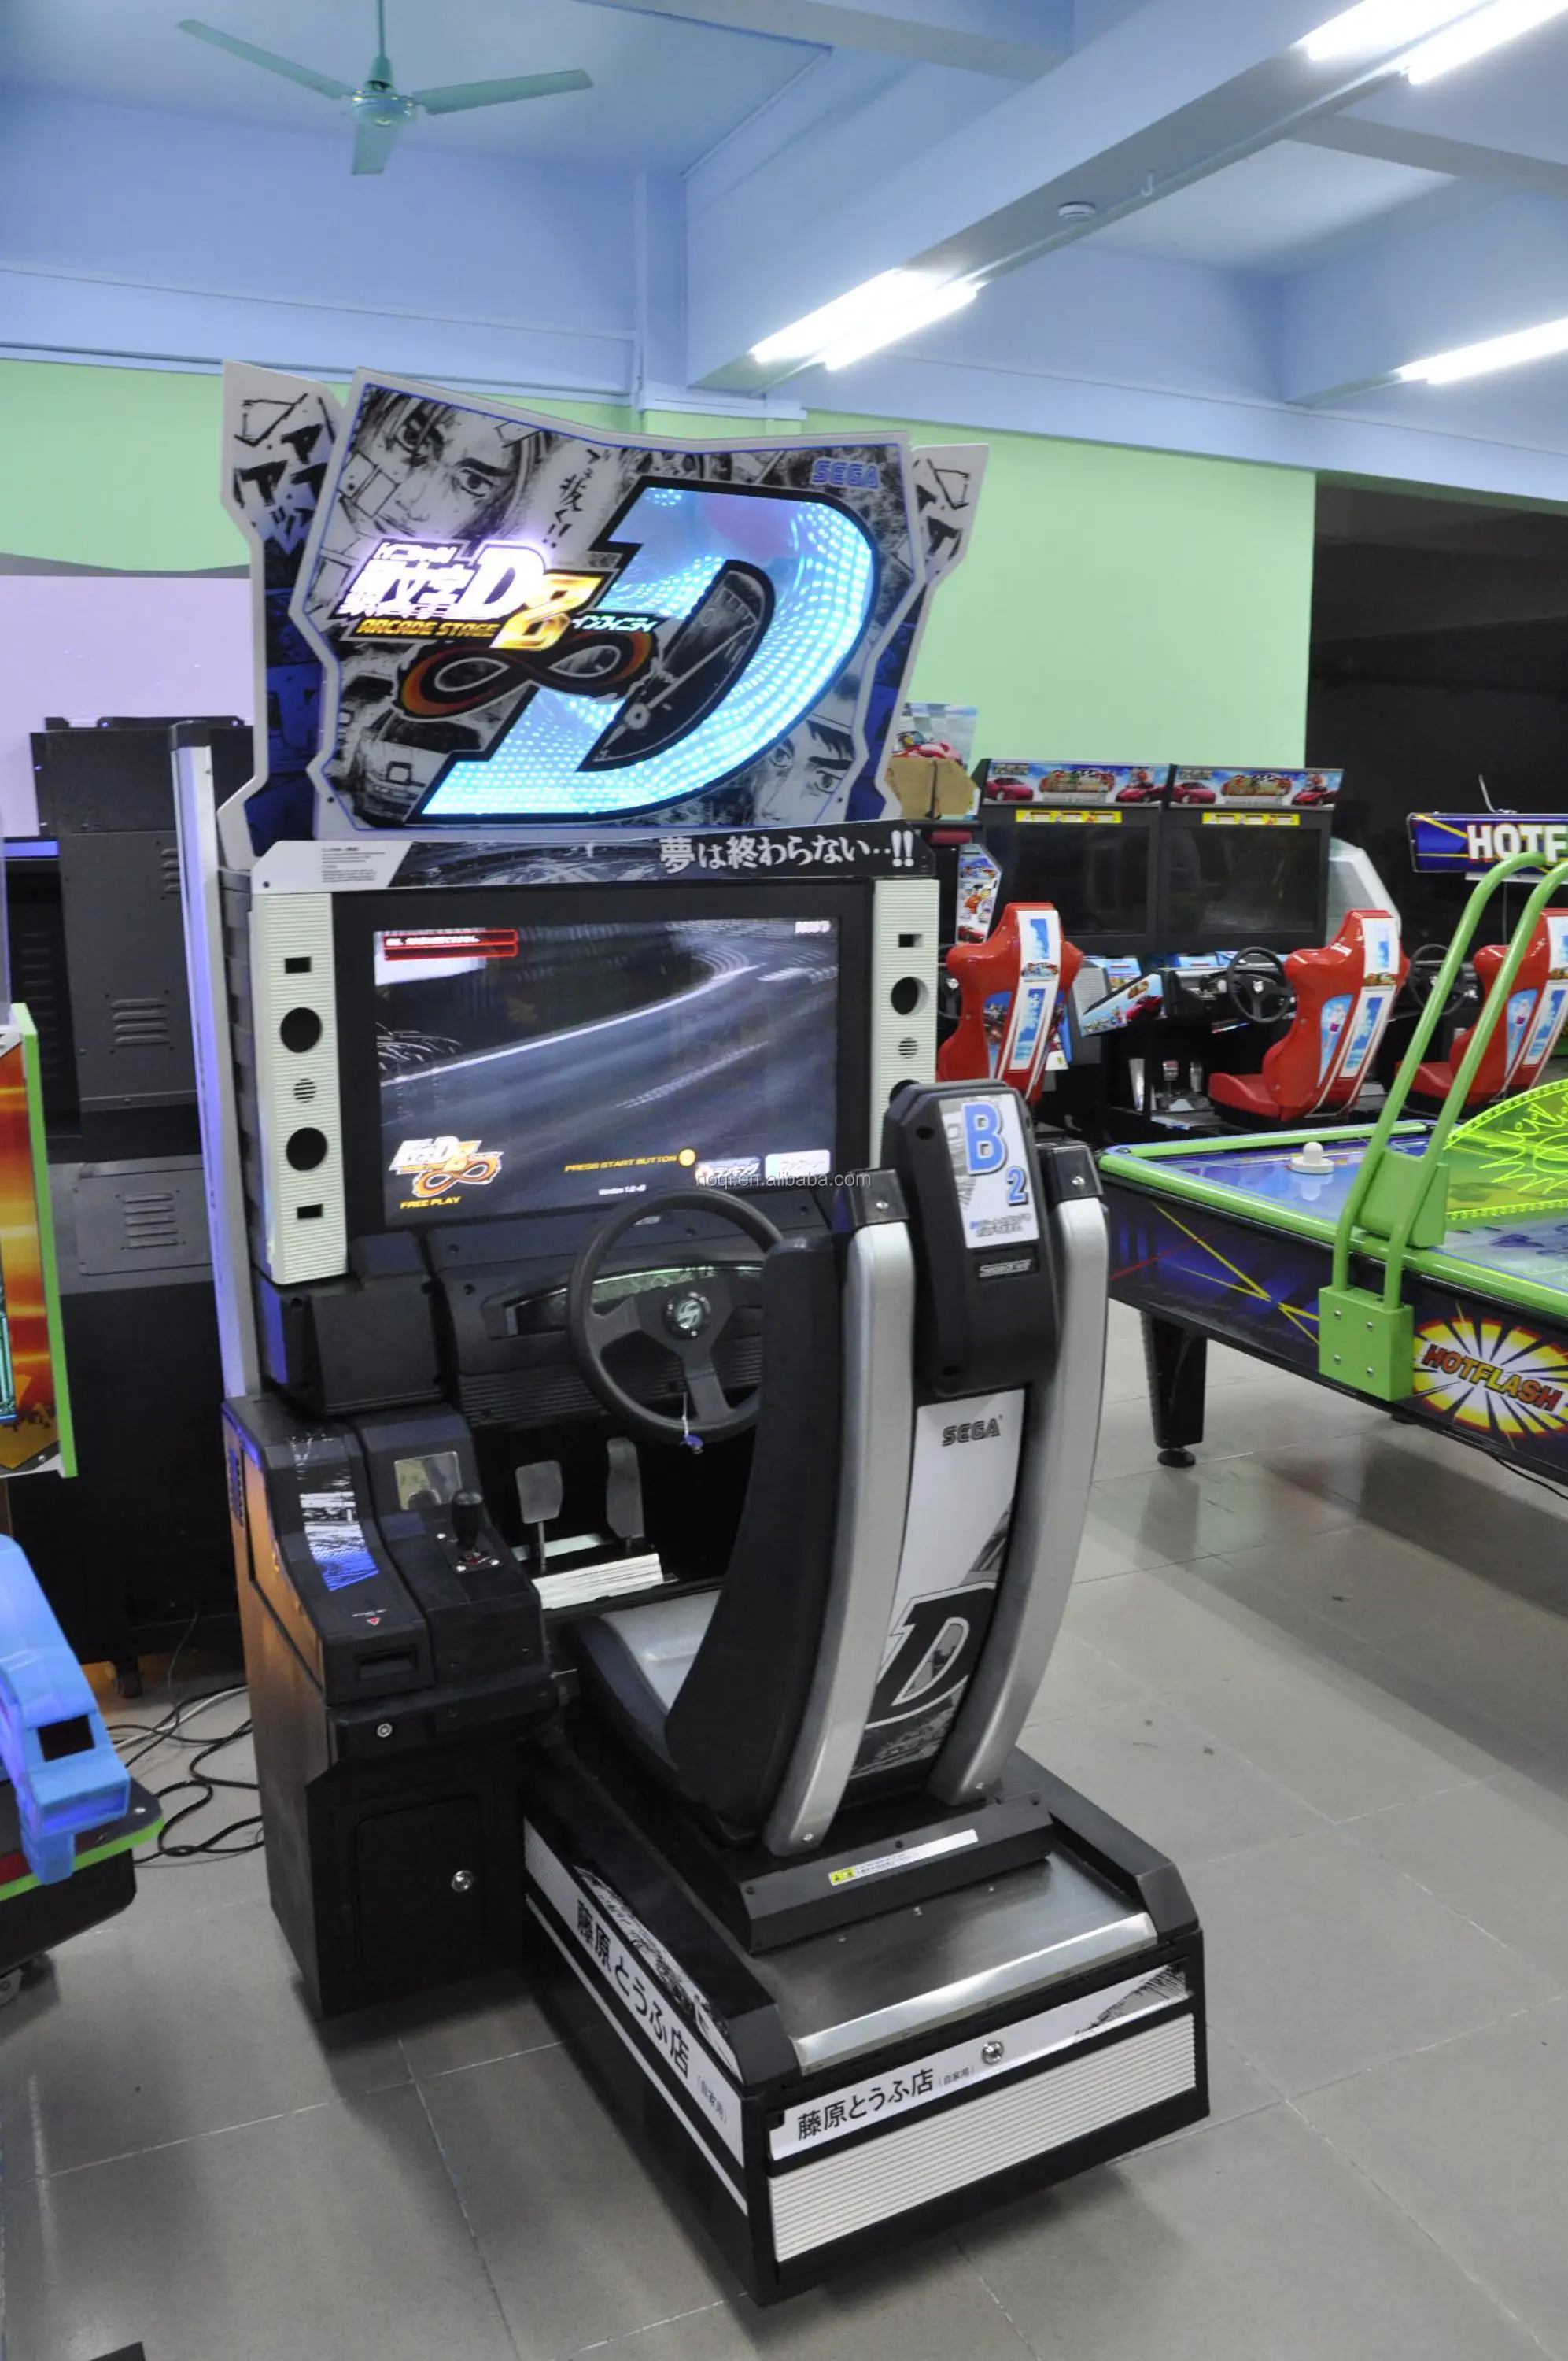 Alibaba best seller original arcade initial d8 india car racing game machine